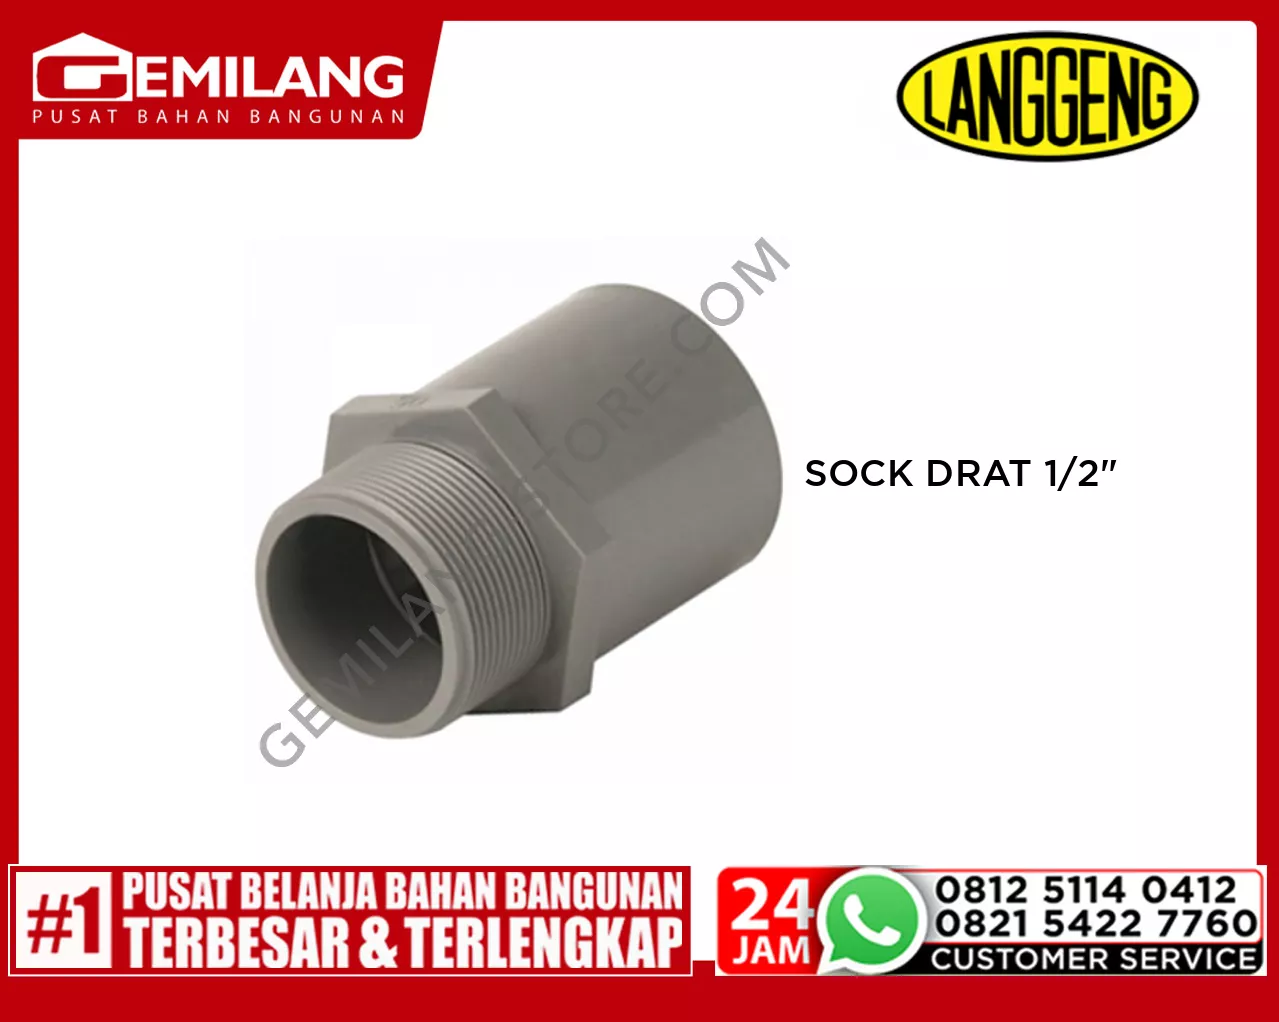 LANGGENG SOCK DRAT LUAR PVC 1/2inch